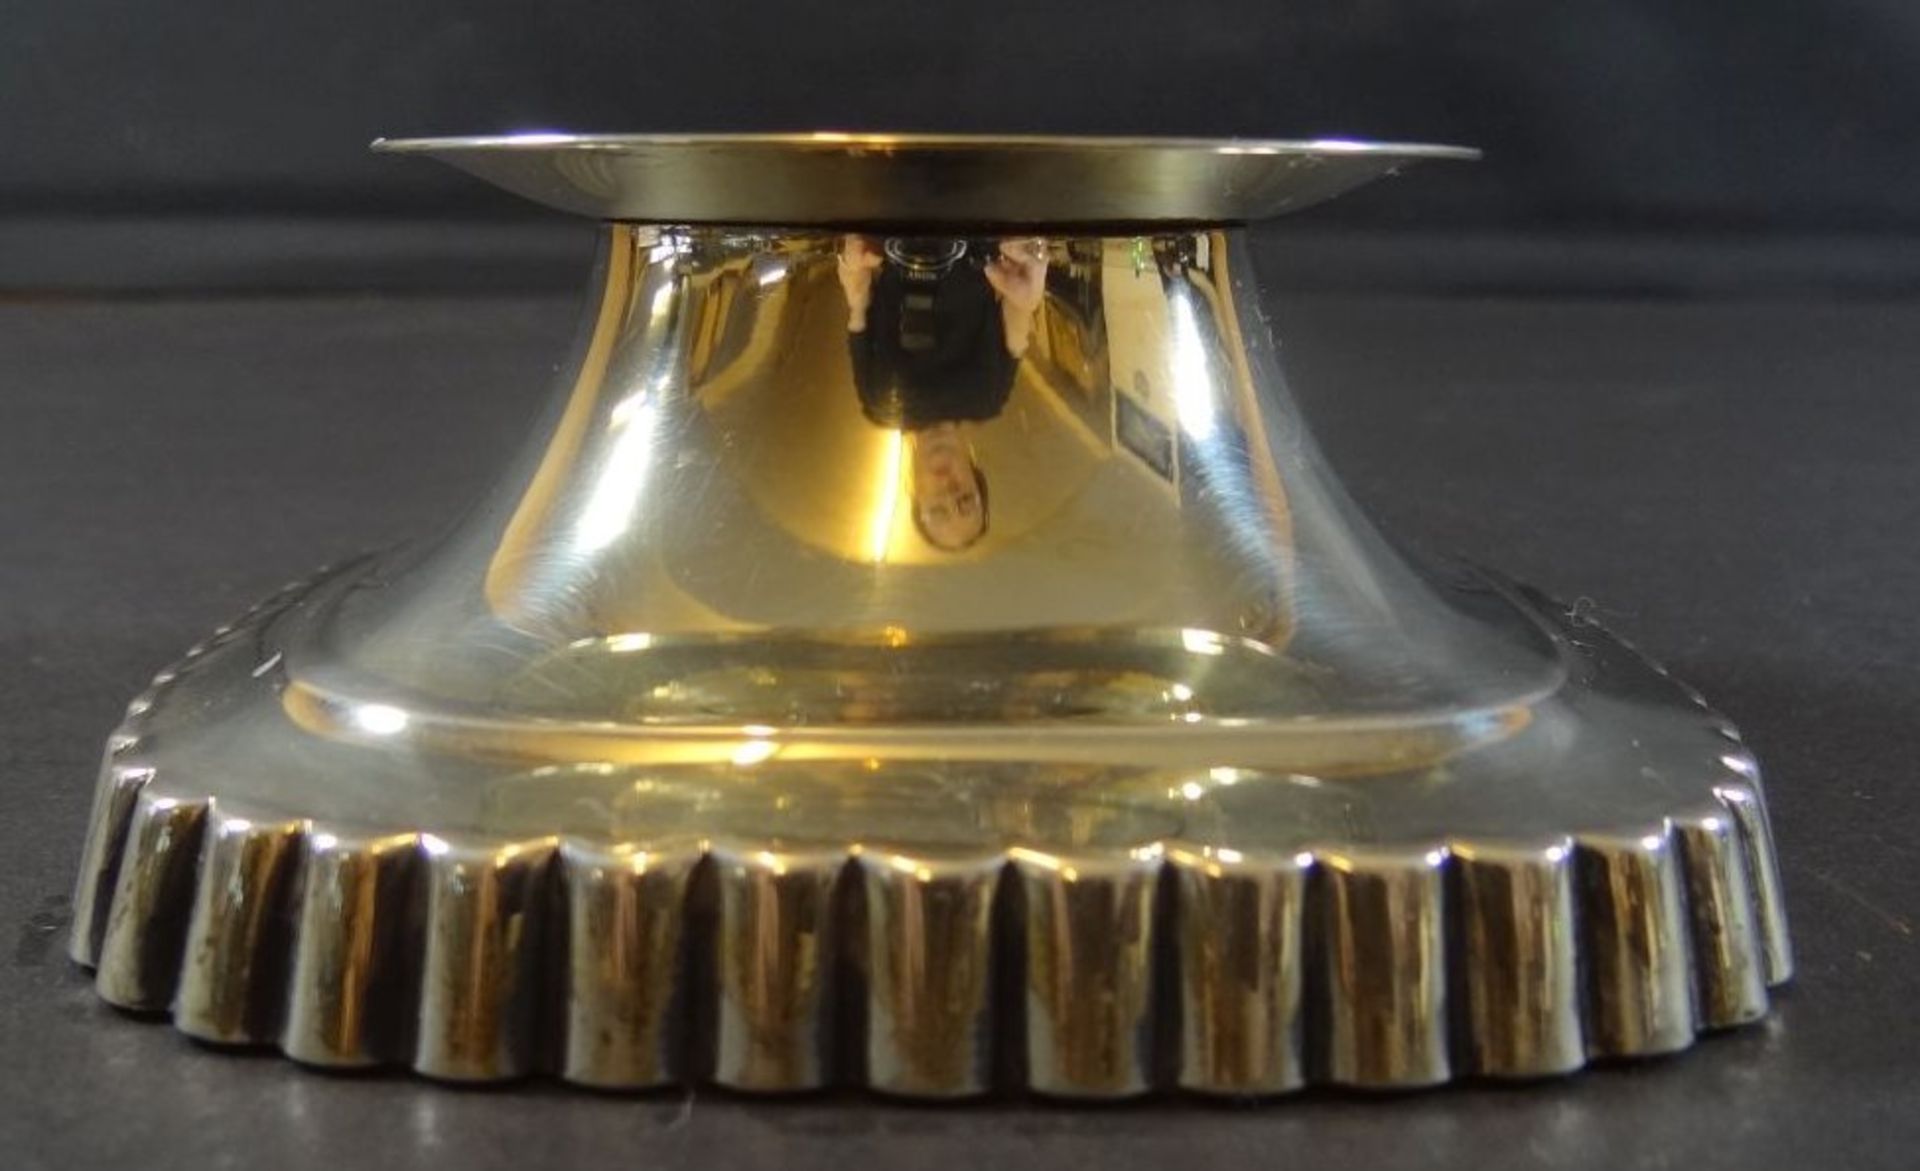 Kerzenhalter Silber-835-Wilkens-Bremen, gefüllter Stand, H-4 cm, 10x10 cm, guter Zustand - Bild 2 aus 5